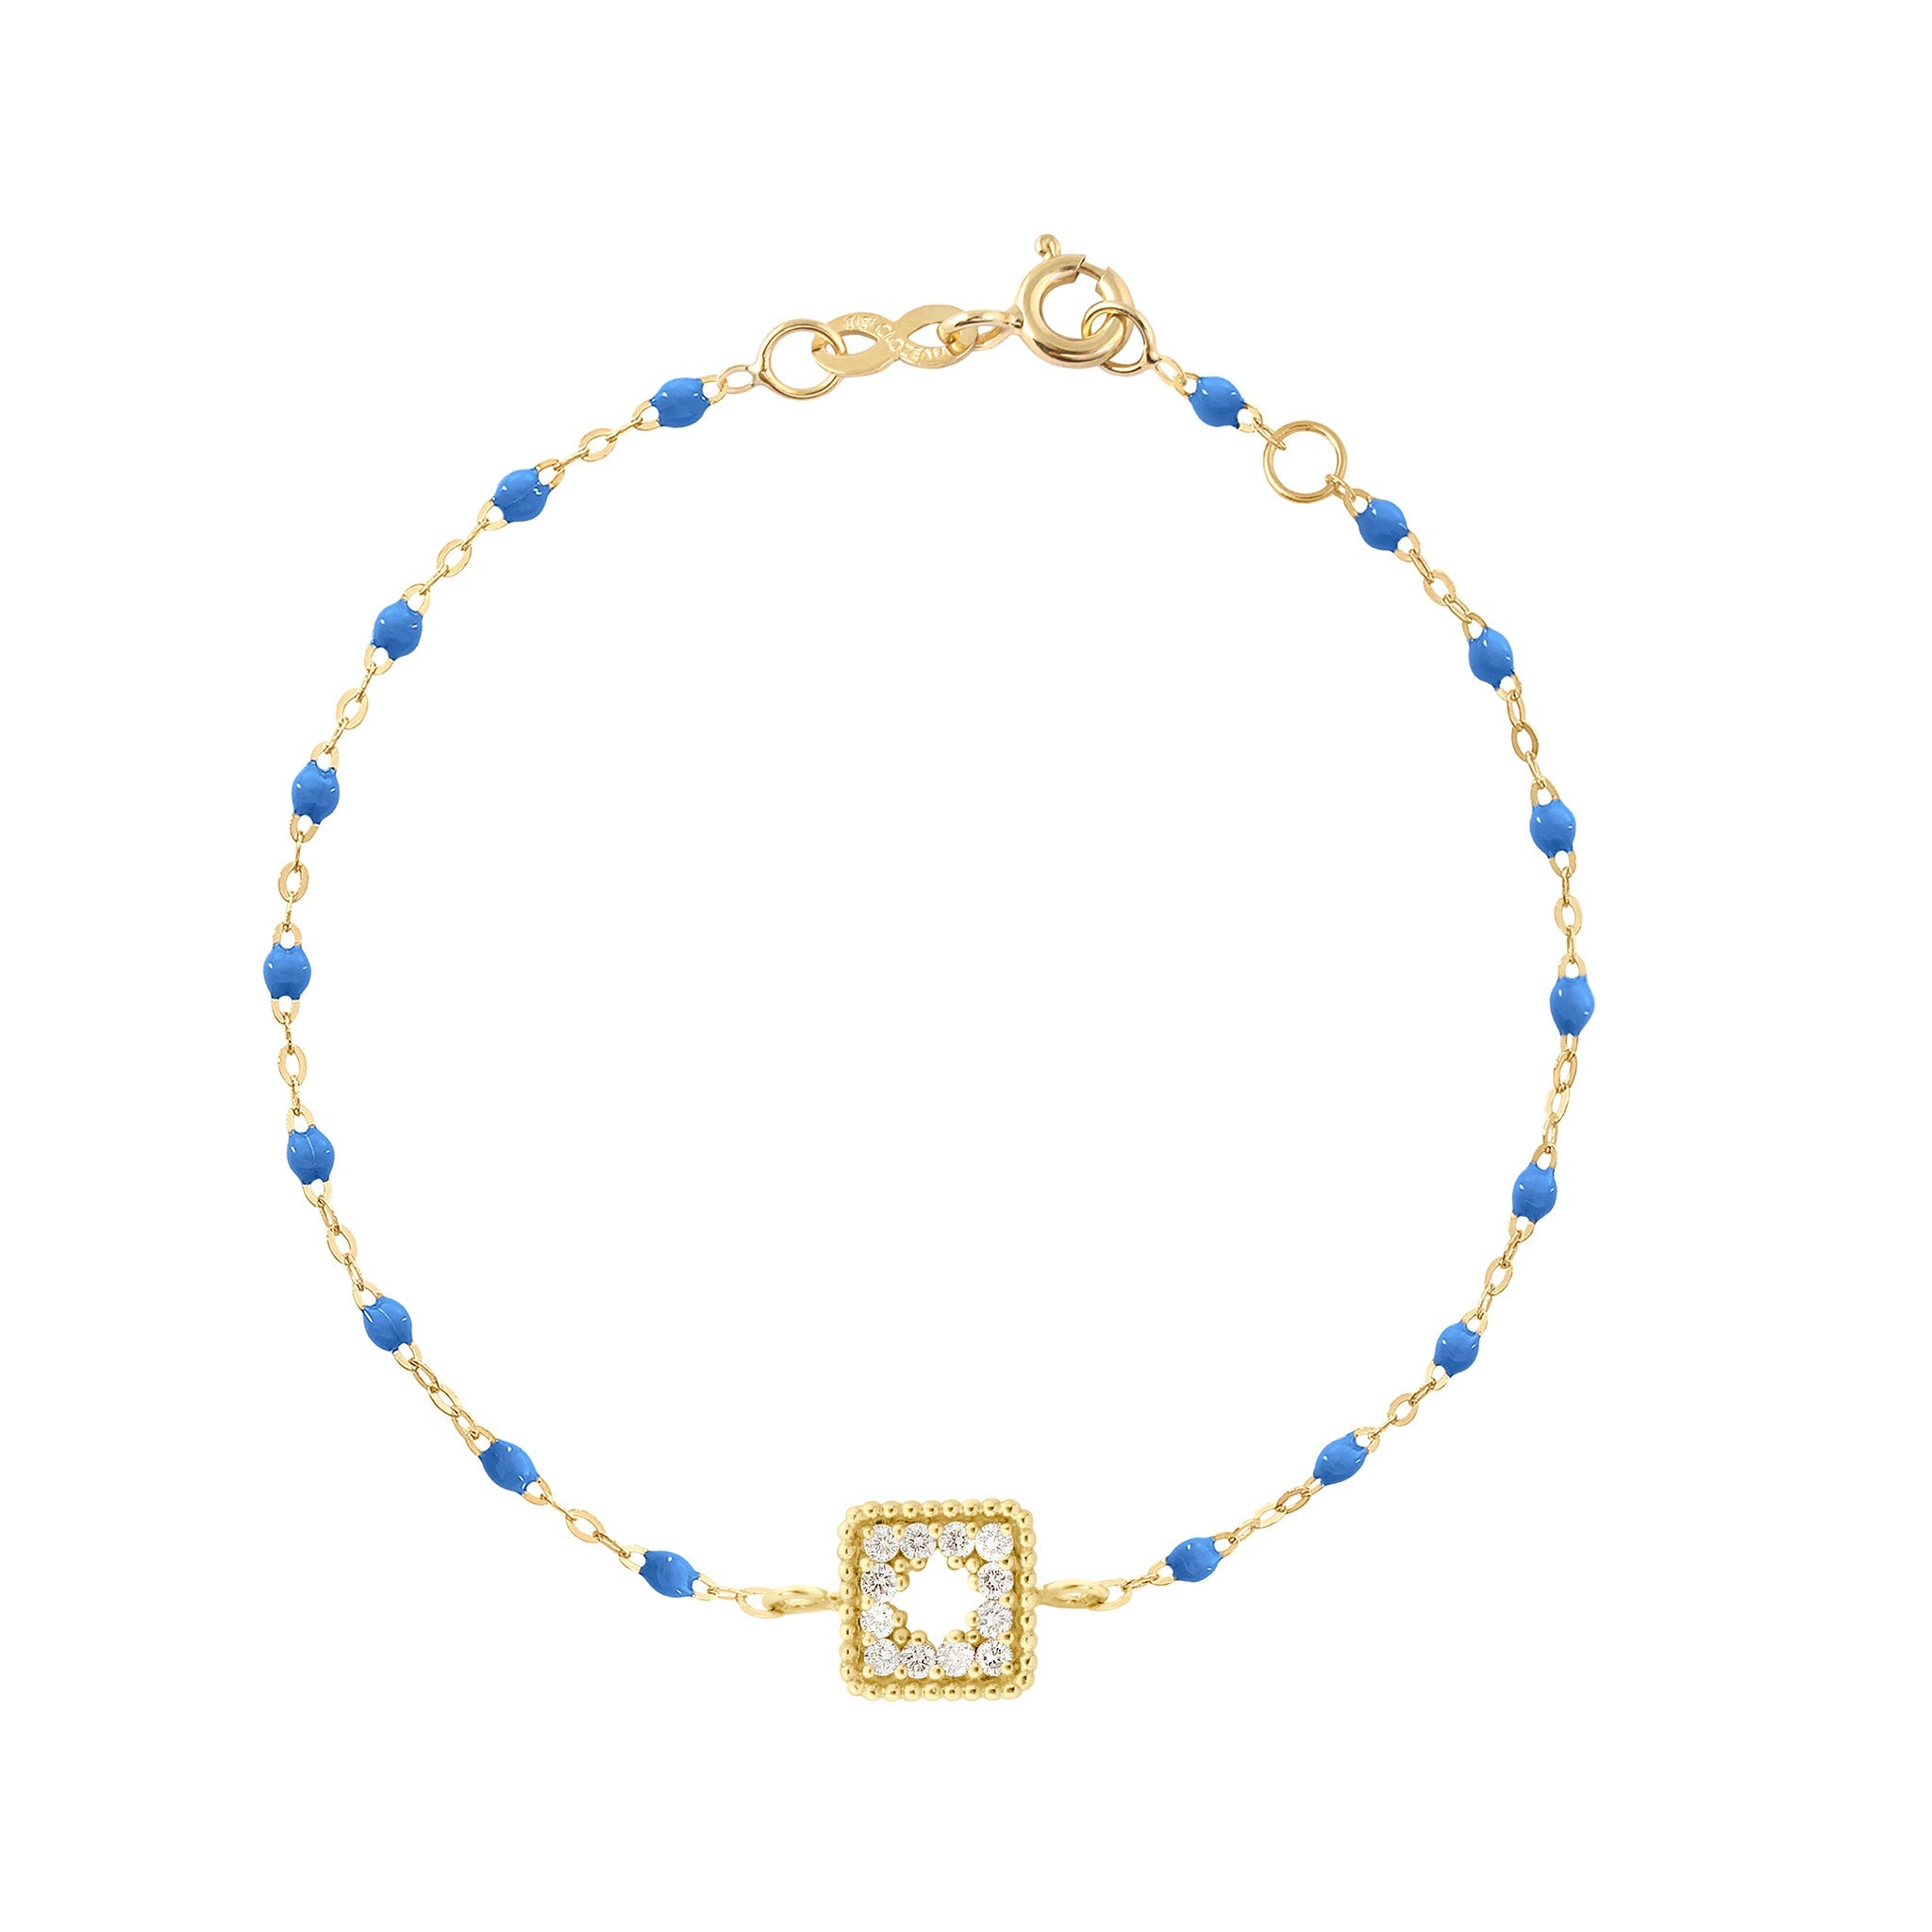 Bracelet bleu fluo Trésor, diamants, or jaune, 17 cm  Référence :  b3tr001j0417di -1